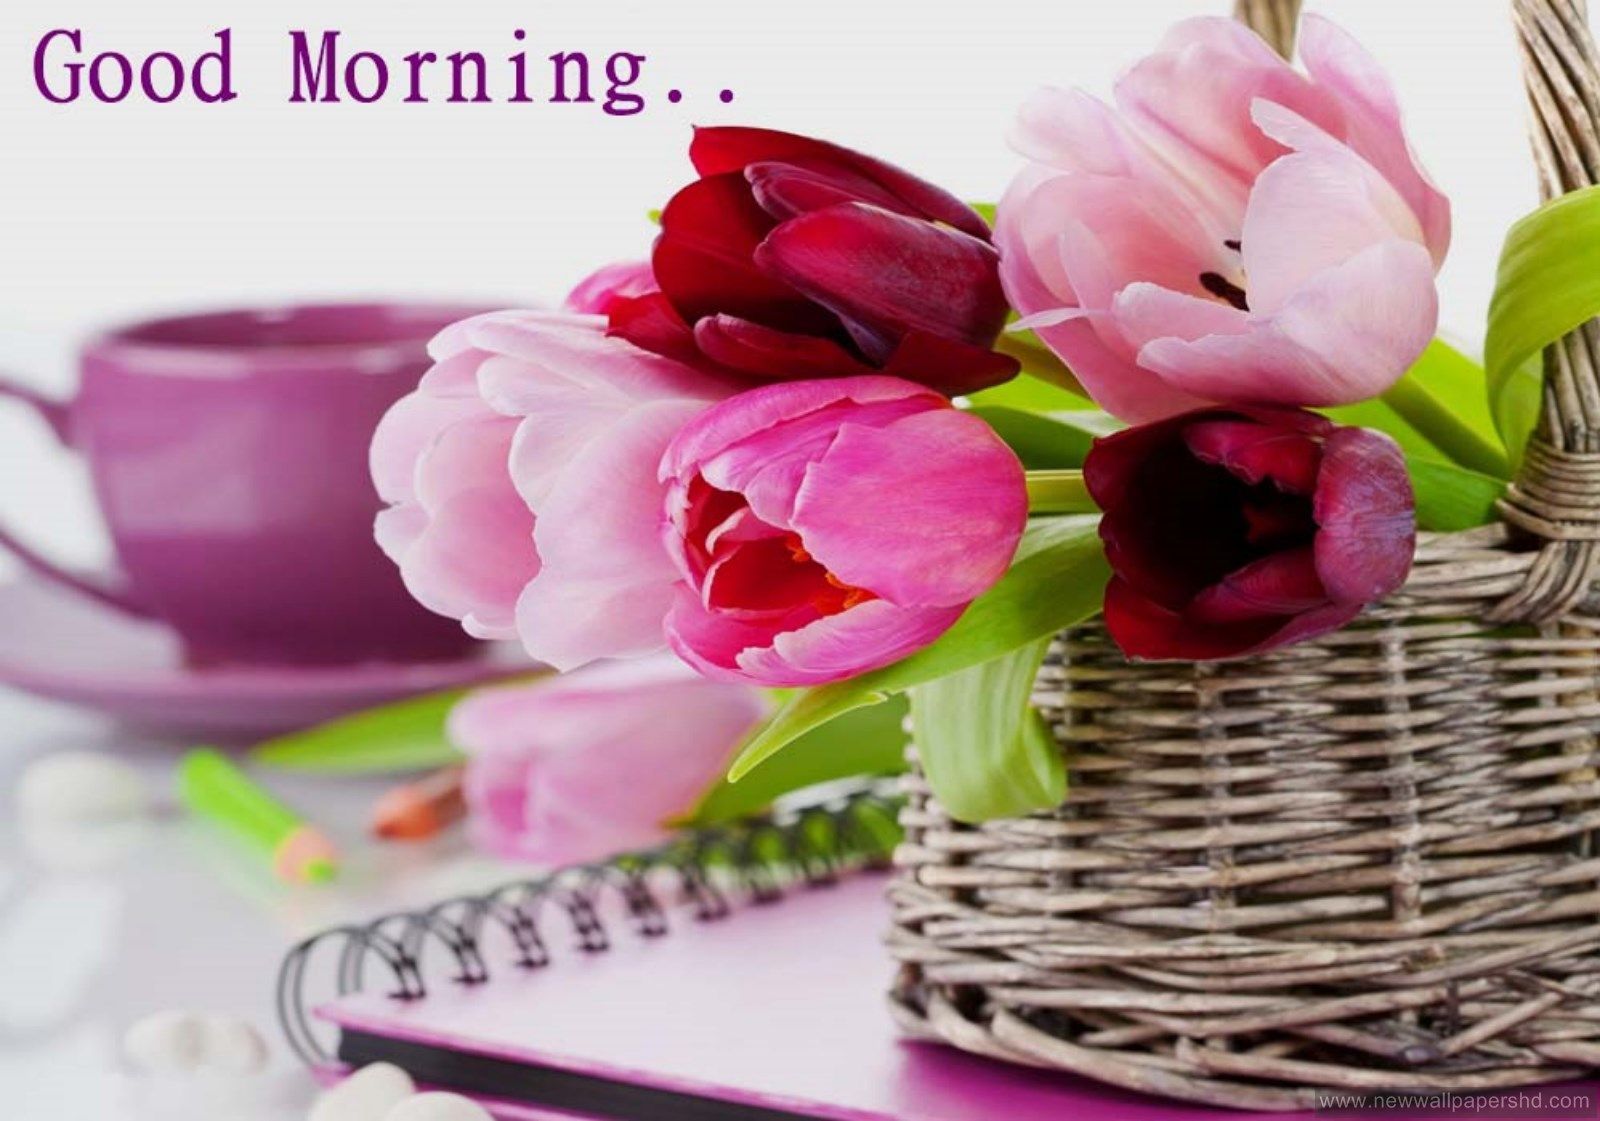 Good Morning Wallpaper Free Download 1060×650 Morning Image Wallpaper (52 Wallpaper). Ado. Good morning wallpaper, Morning picture, Free good morning image